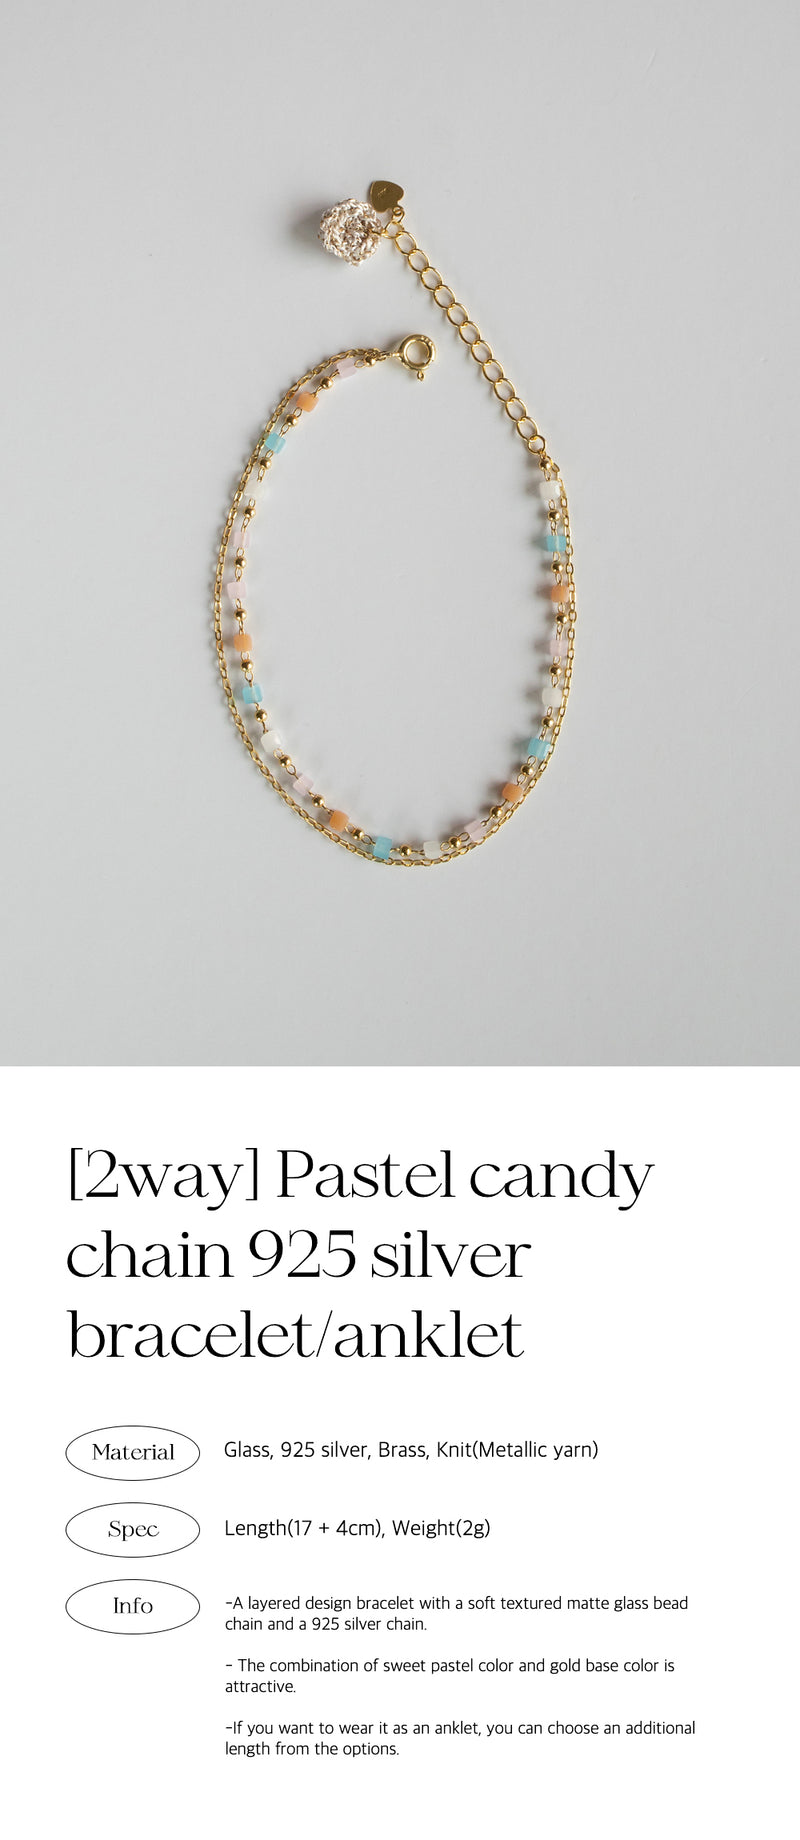 パステルキャンディーチェーン925シルバーブレスレット/[2way] Pastel candy chain 925 silver bracelet/anklet